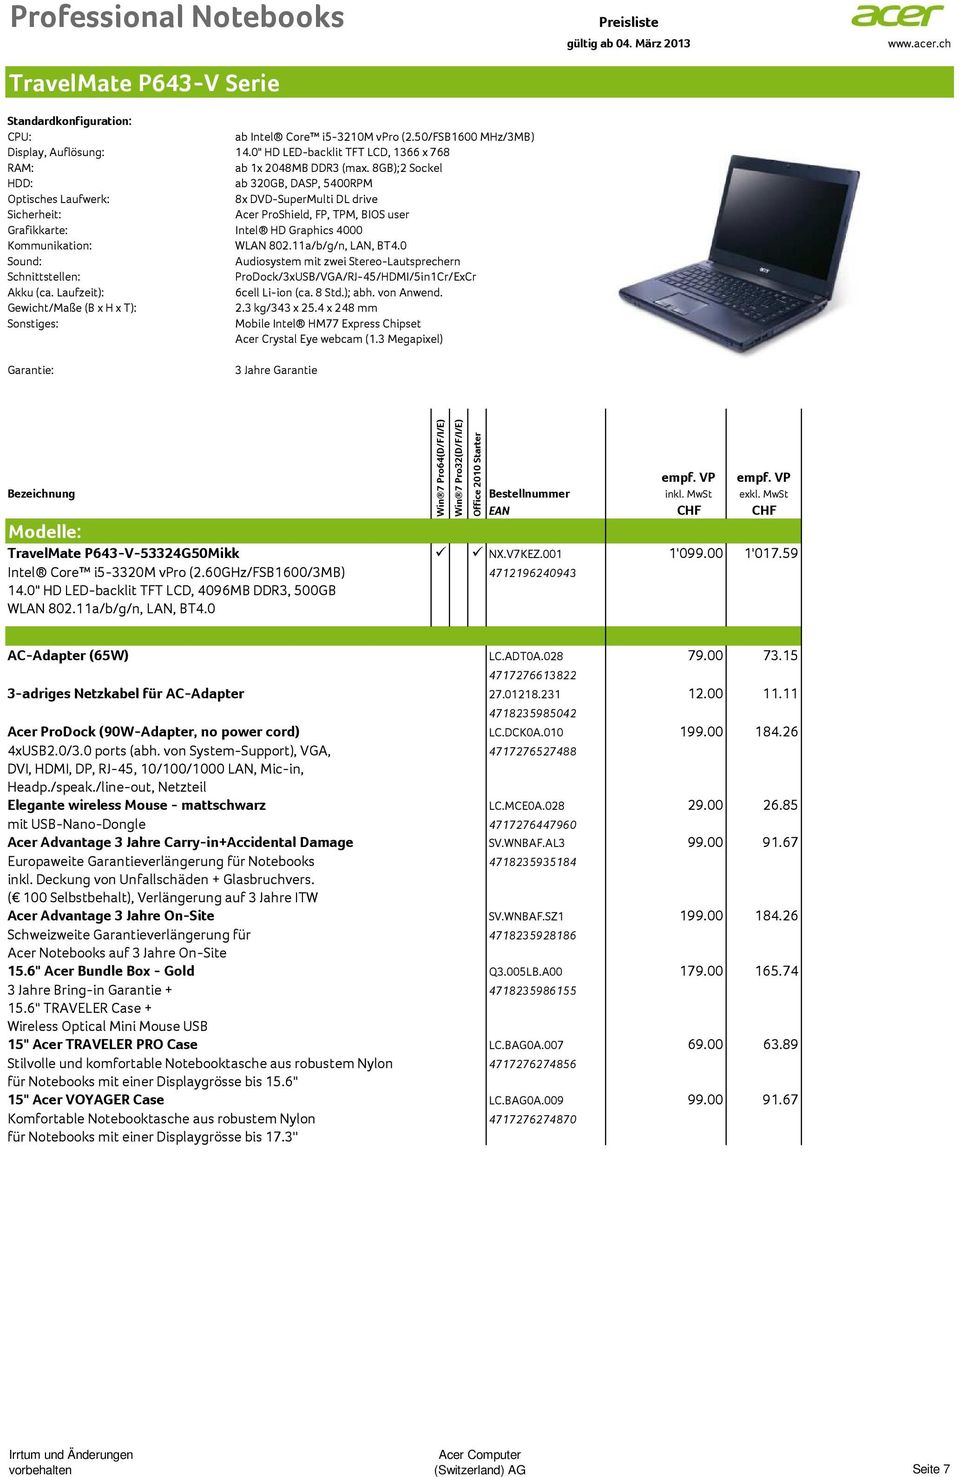 0 ProDock/3xUSB/VGA/RJ-45/HDMI/5in1Cr/ExCr 6cell Li-ion (ca. 8 Std.); abh. von Anwend. Gewicht/Maße (B x H x T): 2.3 kg/343 x 25.4 x 248 mm Acer Crystal Eye webcam (1.